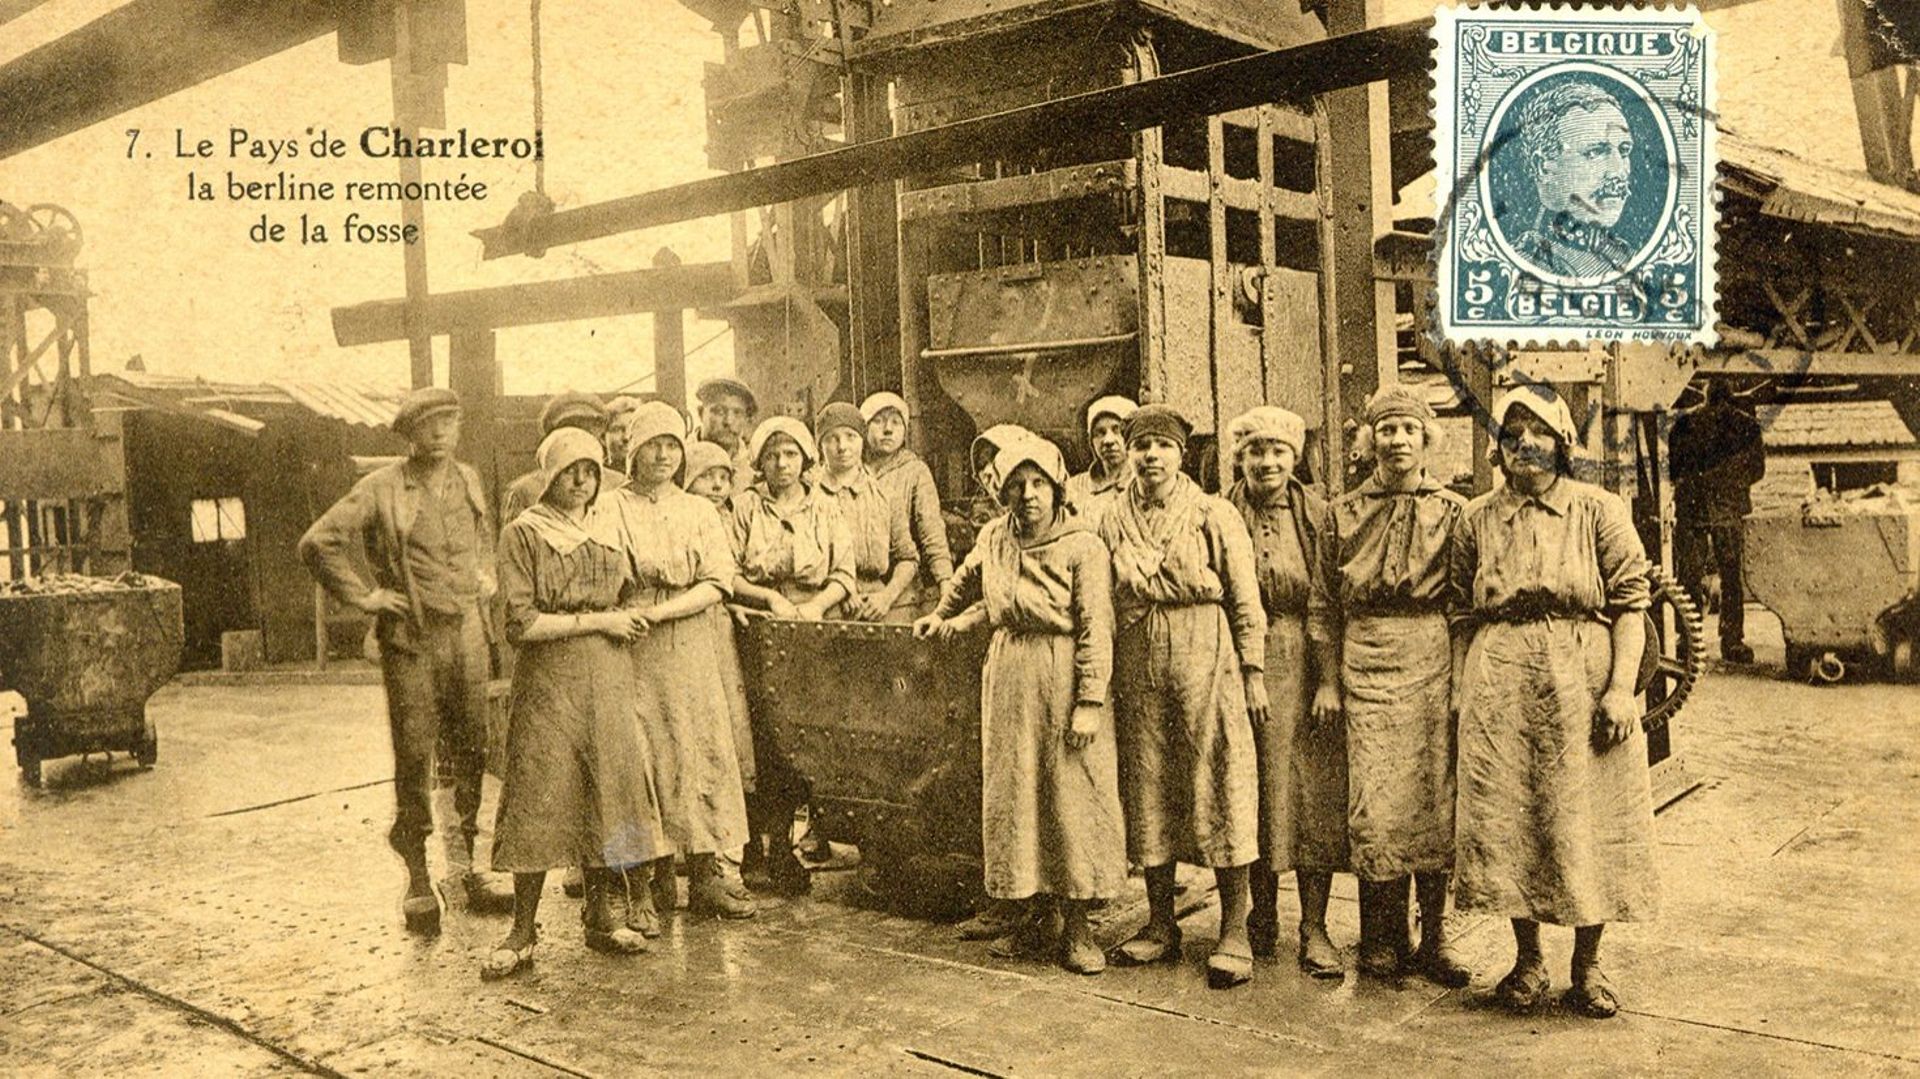 Le 22 septembre, la conférence "Dames aux carreaux" au Bois du Cazier, retrace l’histoire minière au féminin